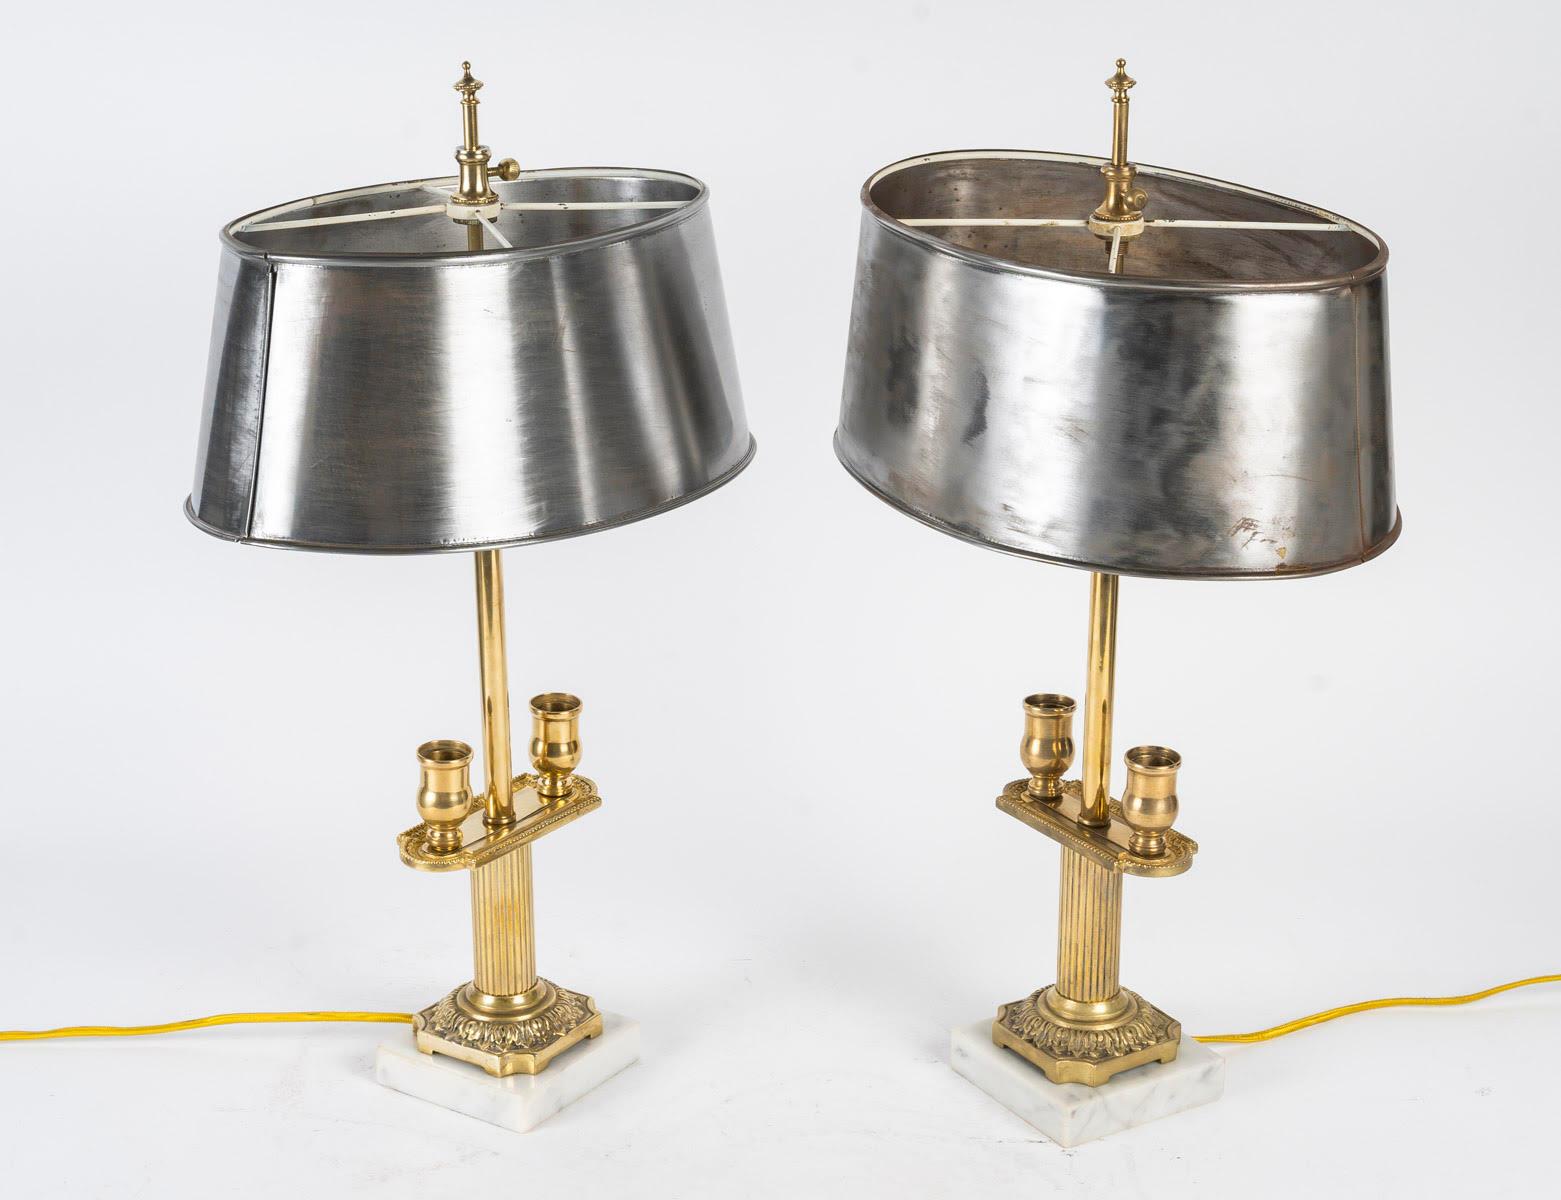 Paire de chandeliers montés en lampes de table, XIXe siècle, période Napoléon III.

Paire de chandeliers en bronze, base en marbre, abat-jour en acier, 19e siècle, époque Napoléon III, 2 lumières sous l'abat-jour.
H : 48cm, L : 28cm, P : 17cm